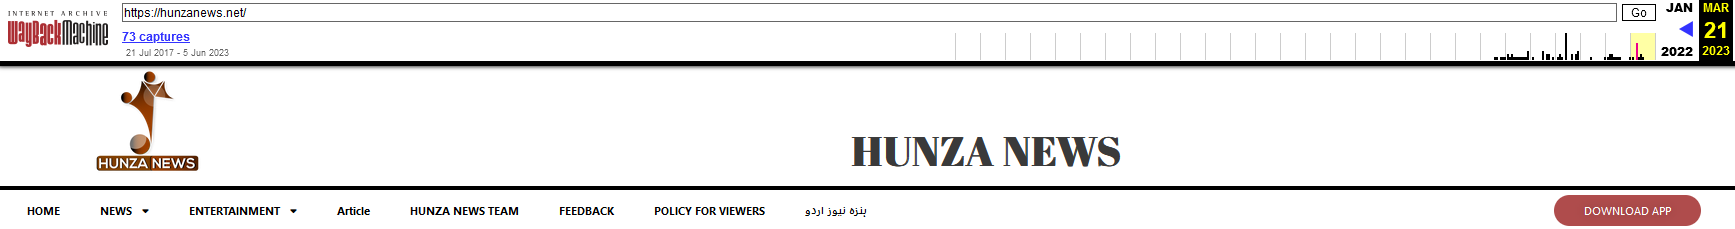 איור 5 אפליקציית הורדת אתר Hunza News שוחזרה